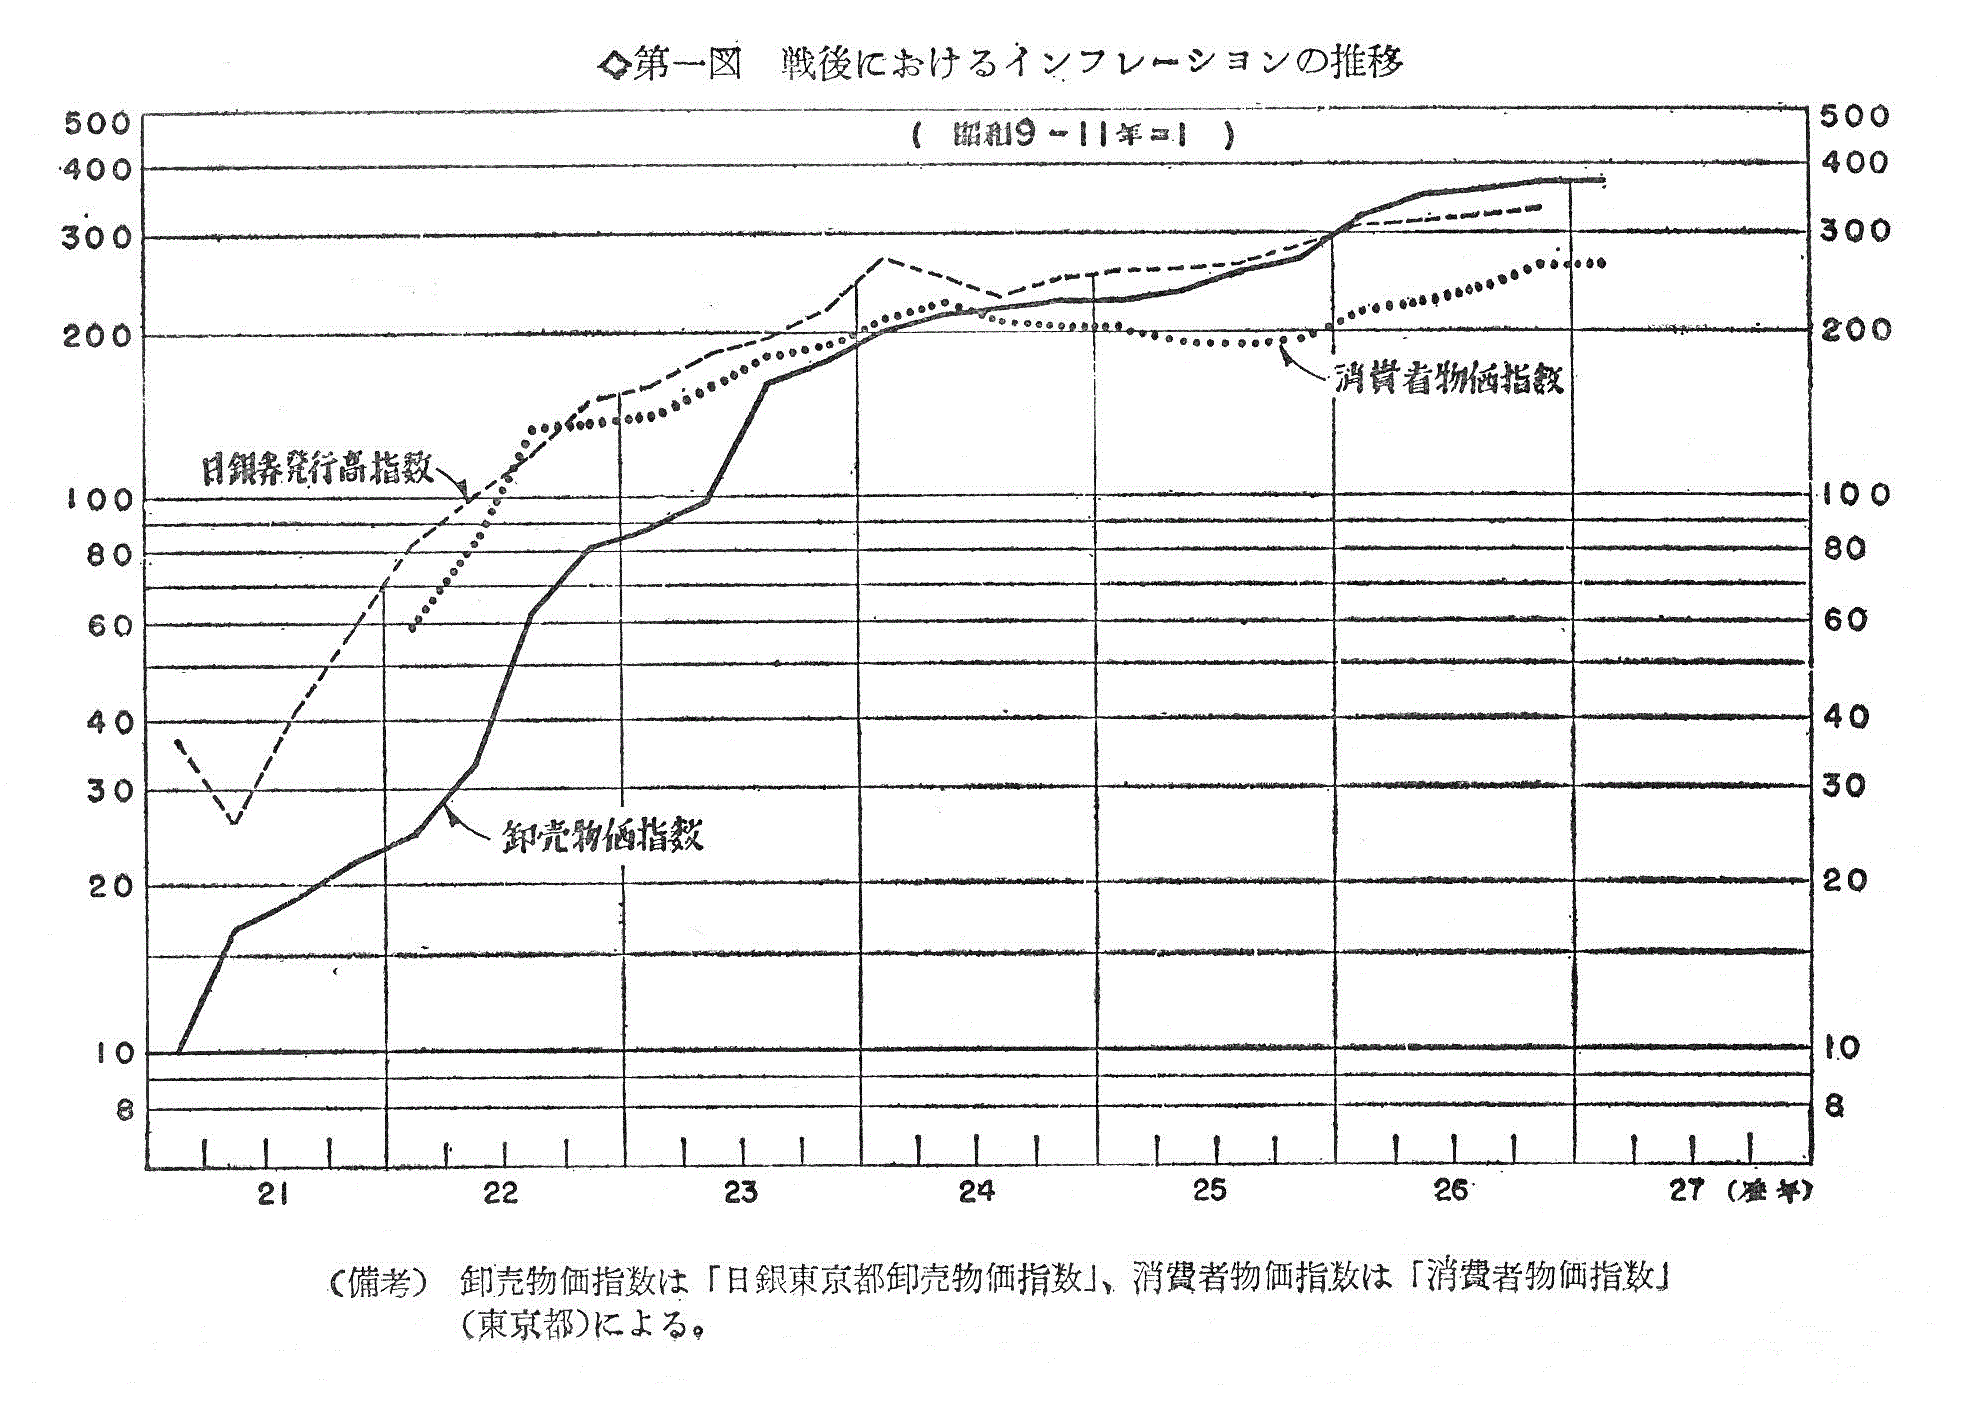 第 一 図 戦後におけるインフレーションの推移